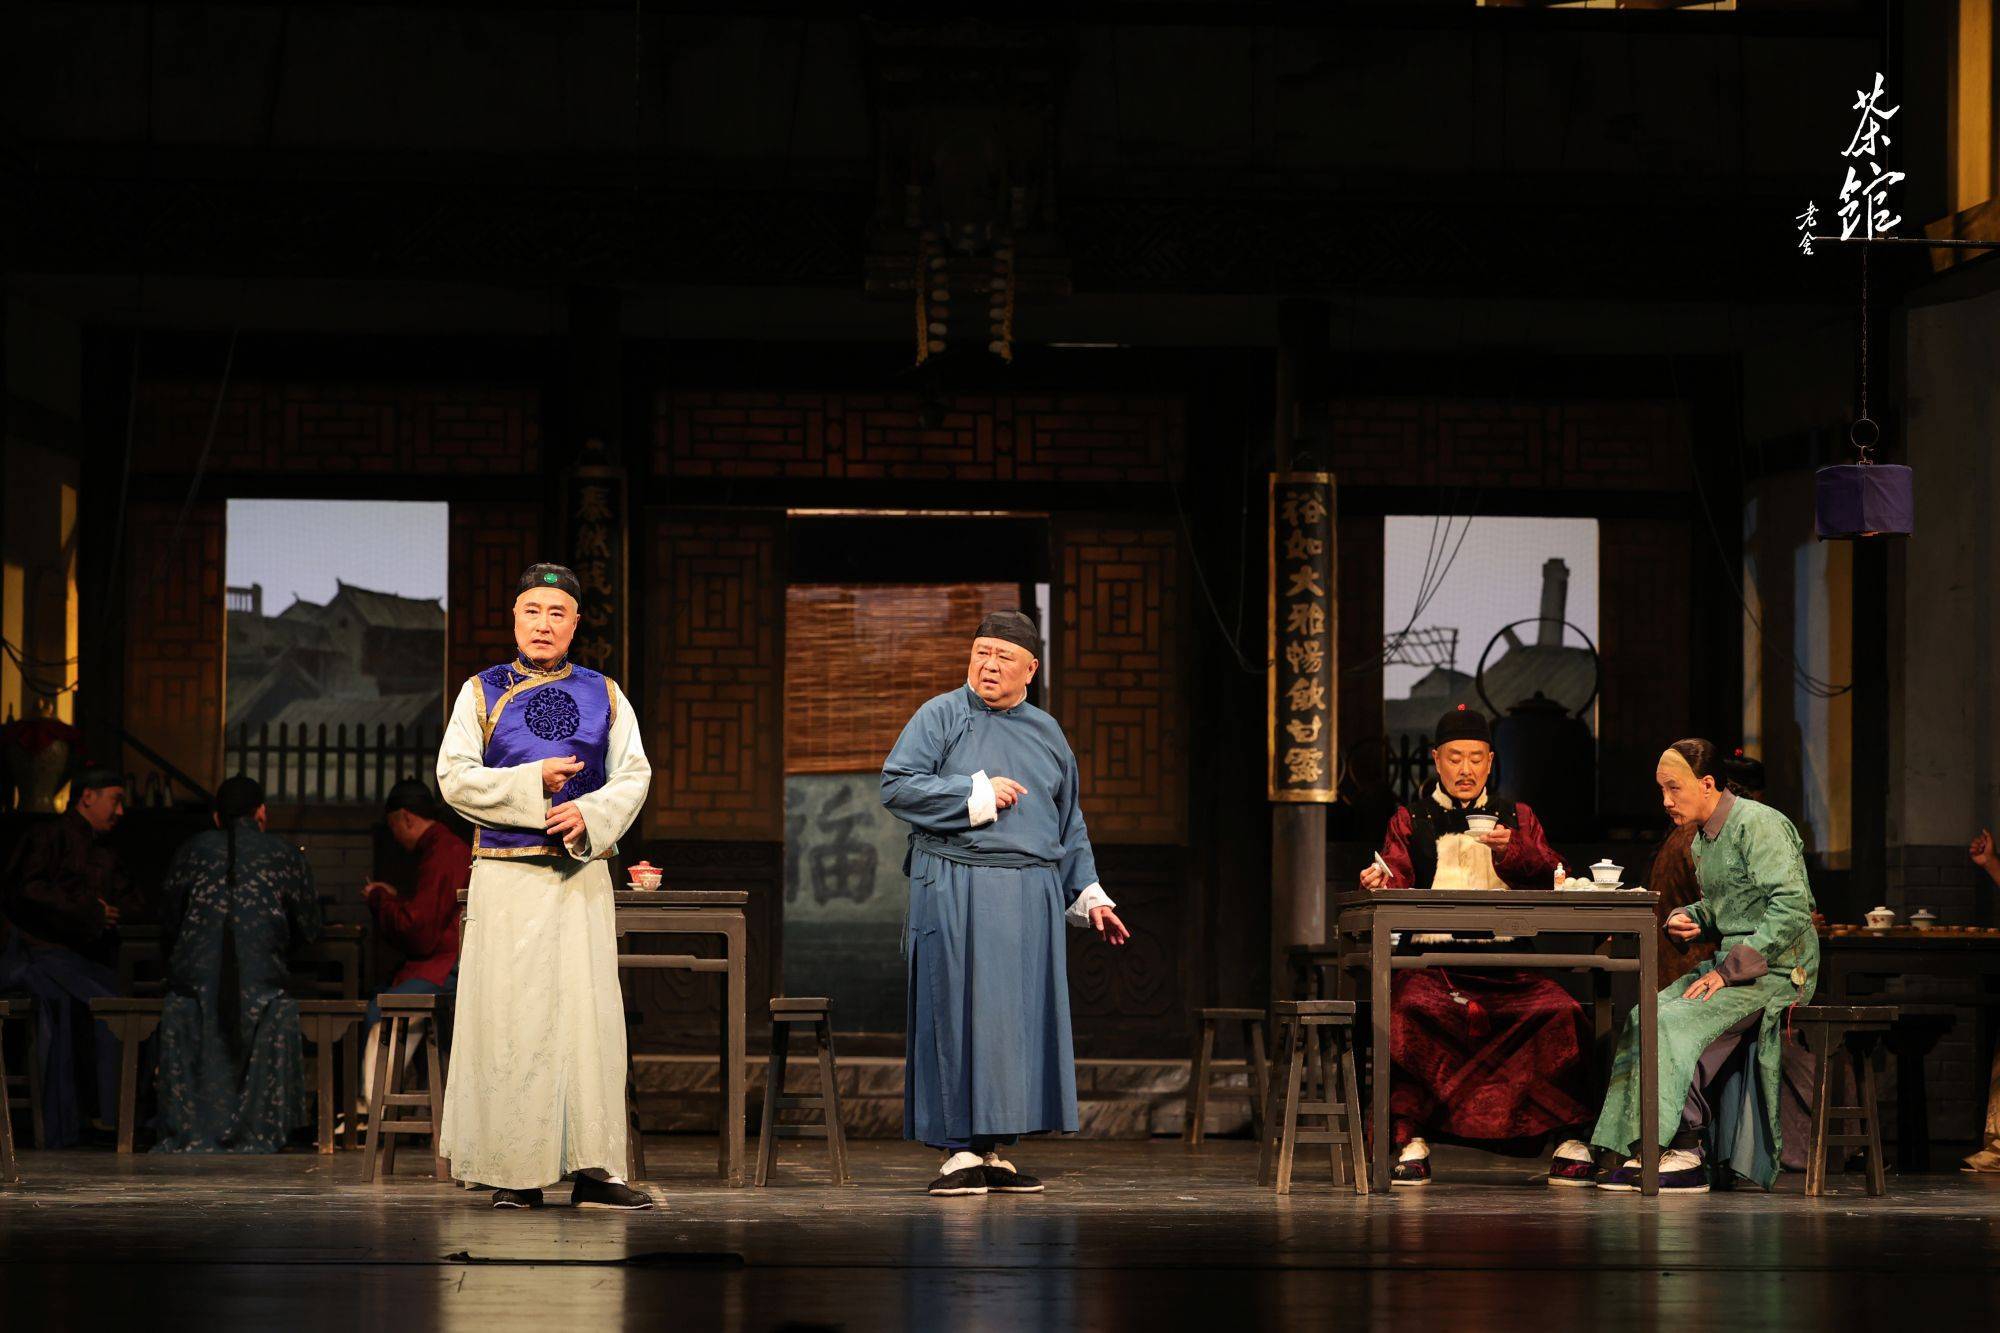 这部作品在北京人艺的舞台上演了60余年,一部茶馆,半部中国话剧发展